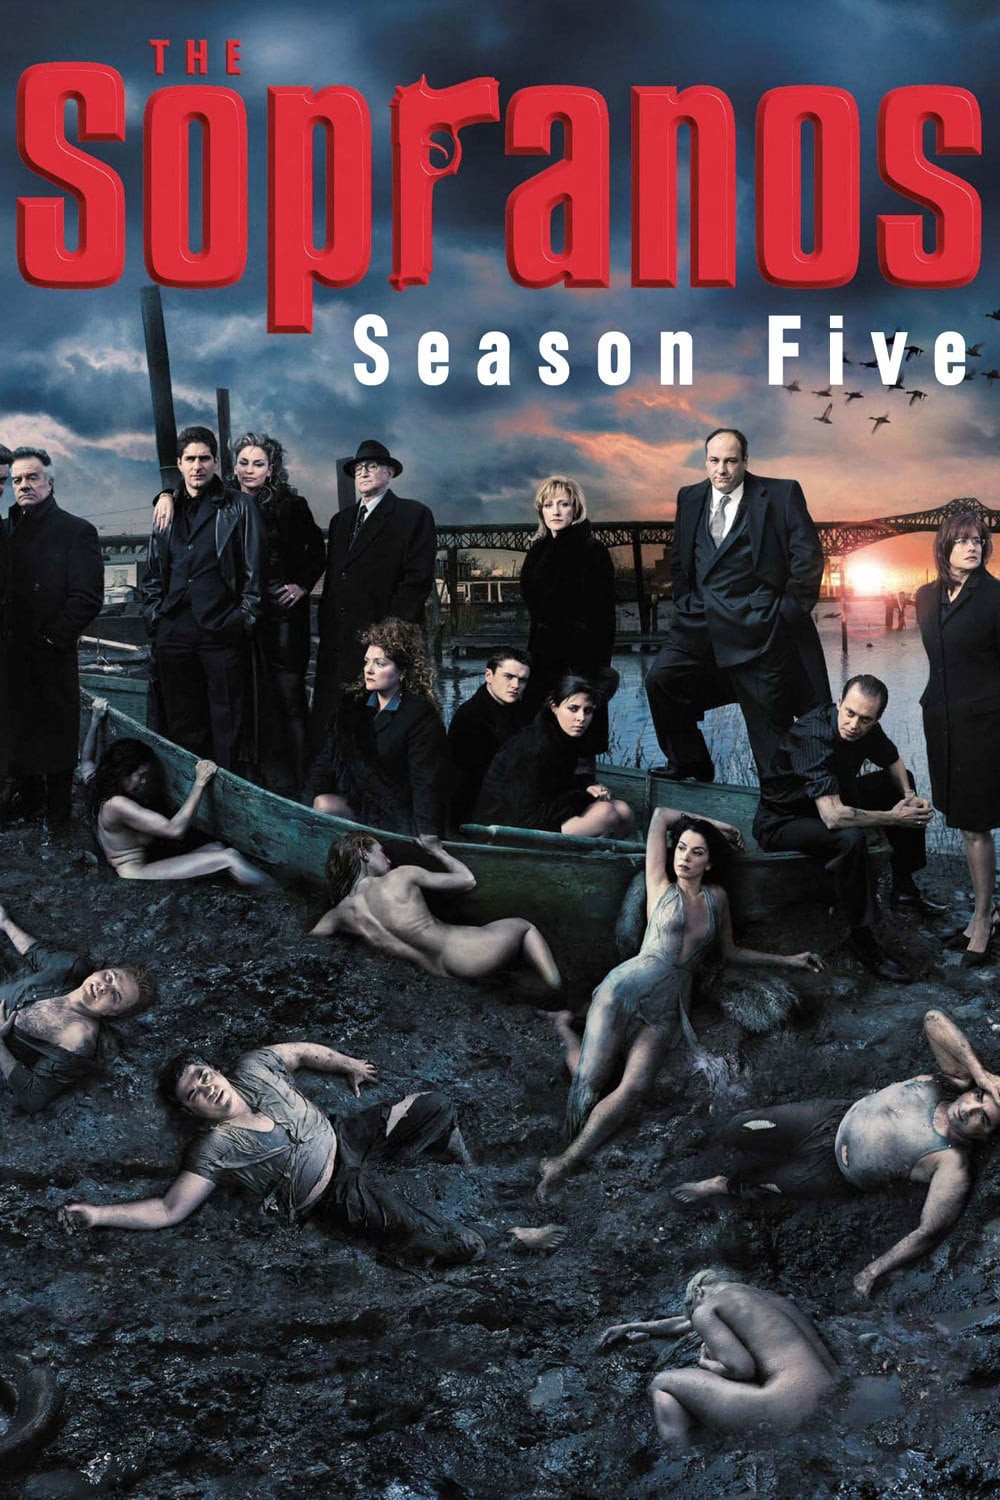 Gia Đình Sopranos (Phần 5) - The Sopranos (Season 5)